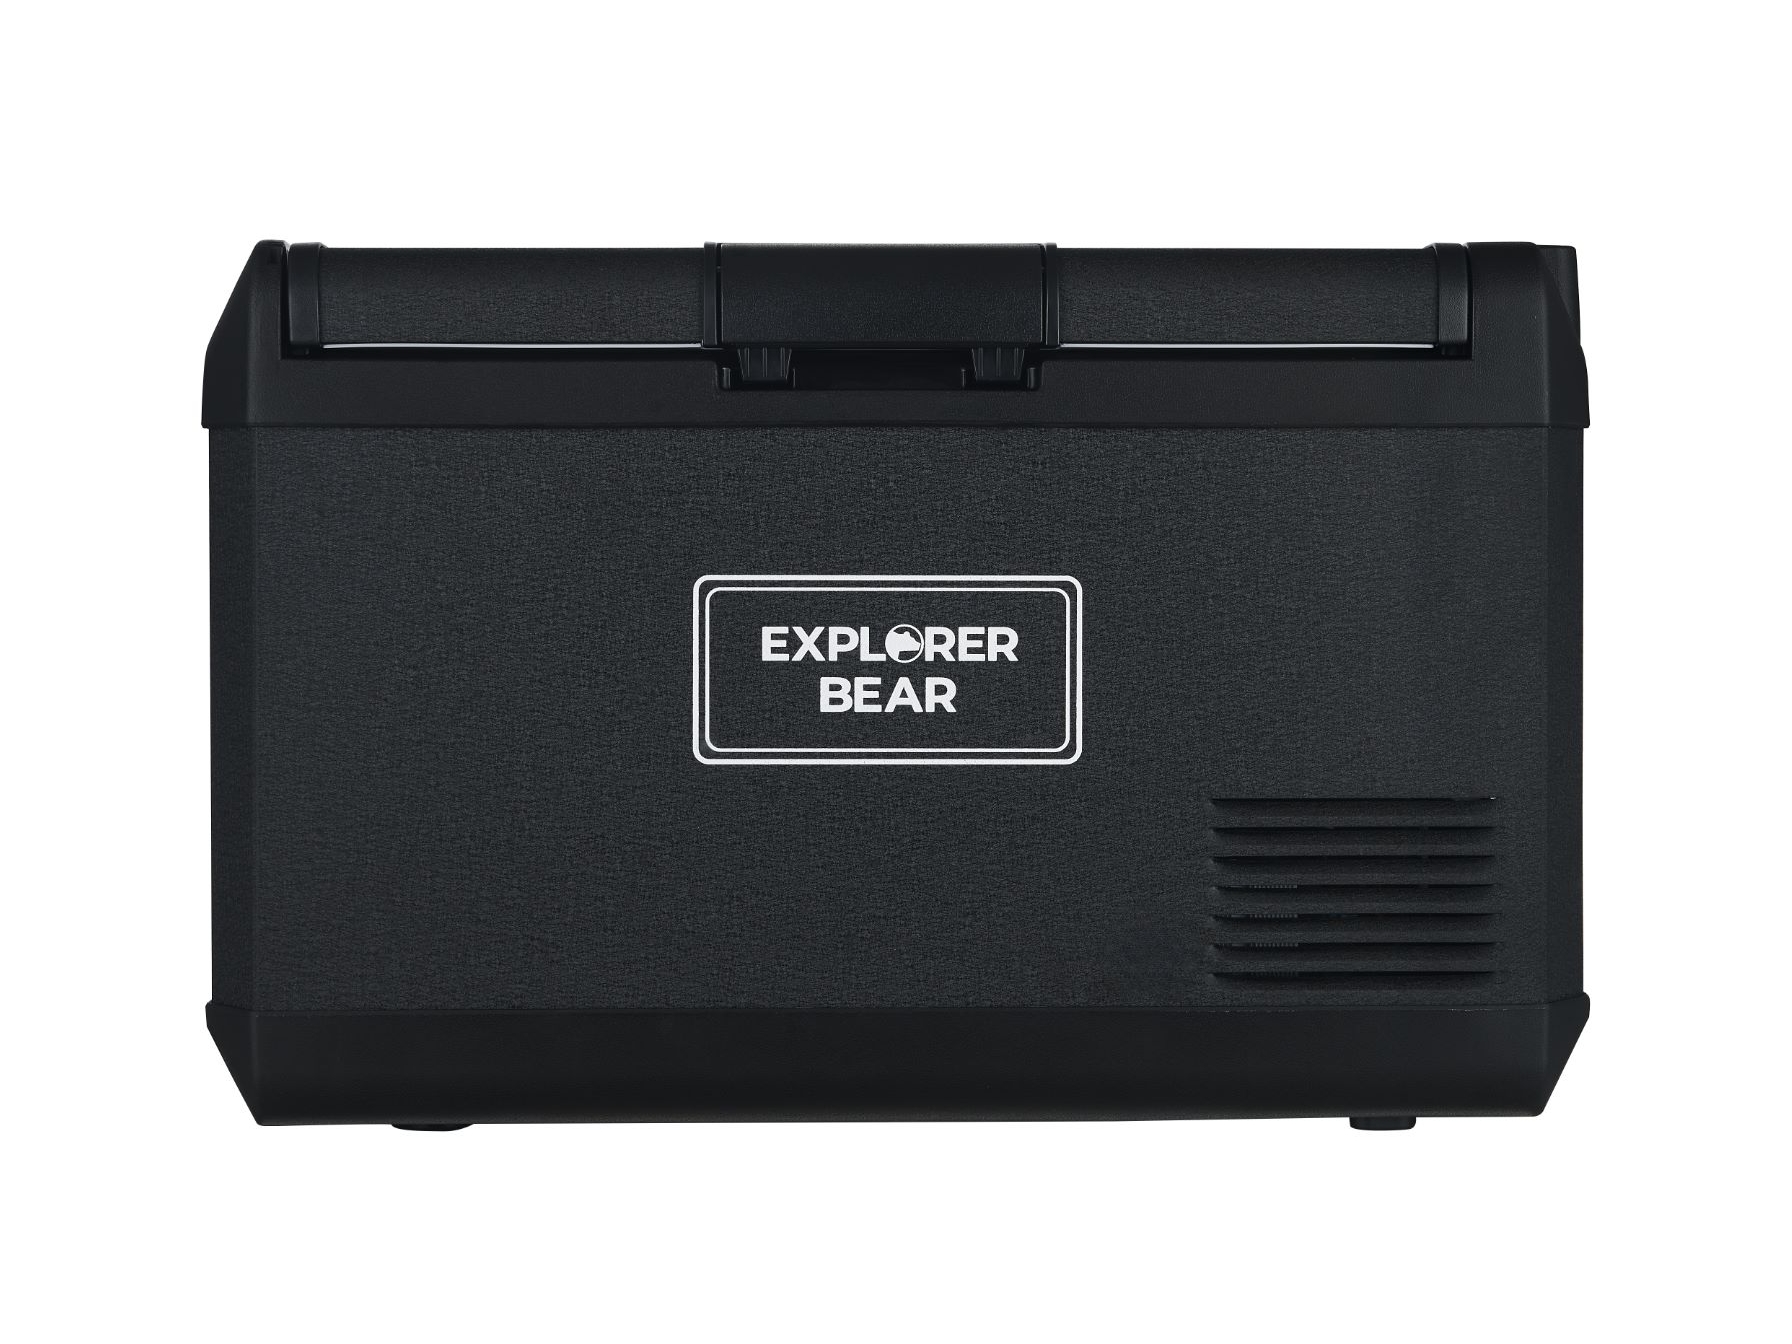 Image of Explorer Bear EX40B 42QT/40L 12/24V Portable Electric Fridge Freezer Black ID 757837342482